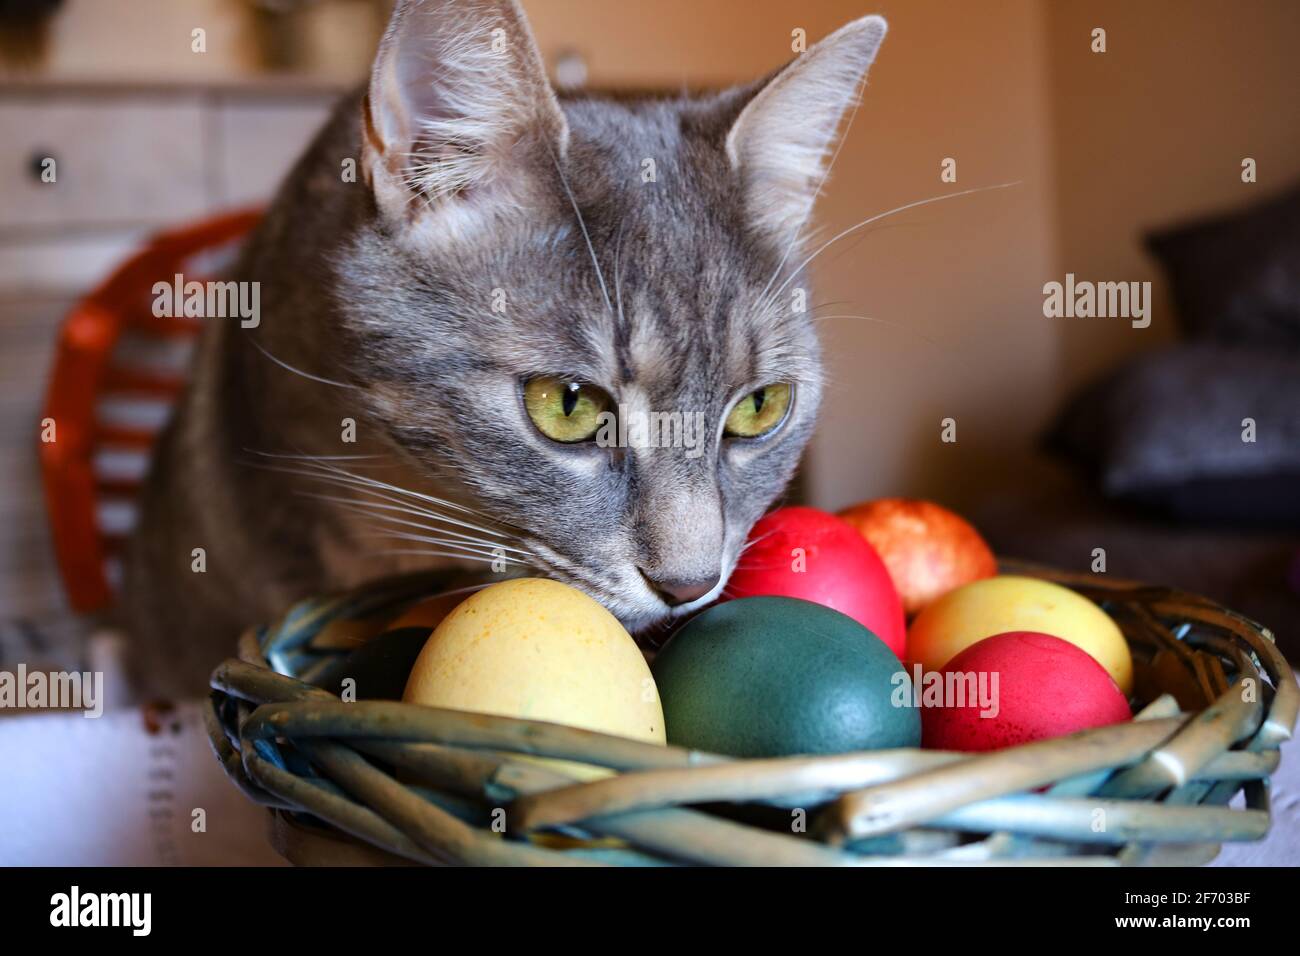 Eine tabby Katze und Ostereier Stockfotografie - Alamy